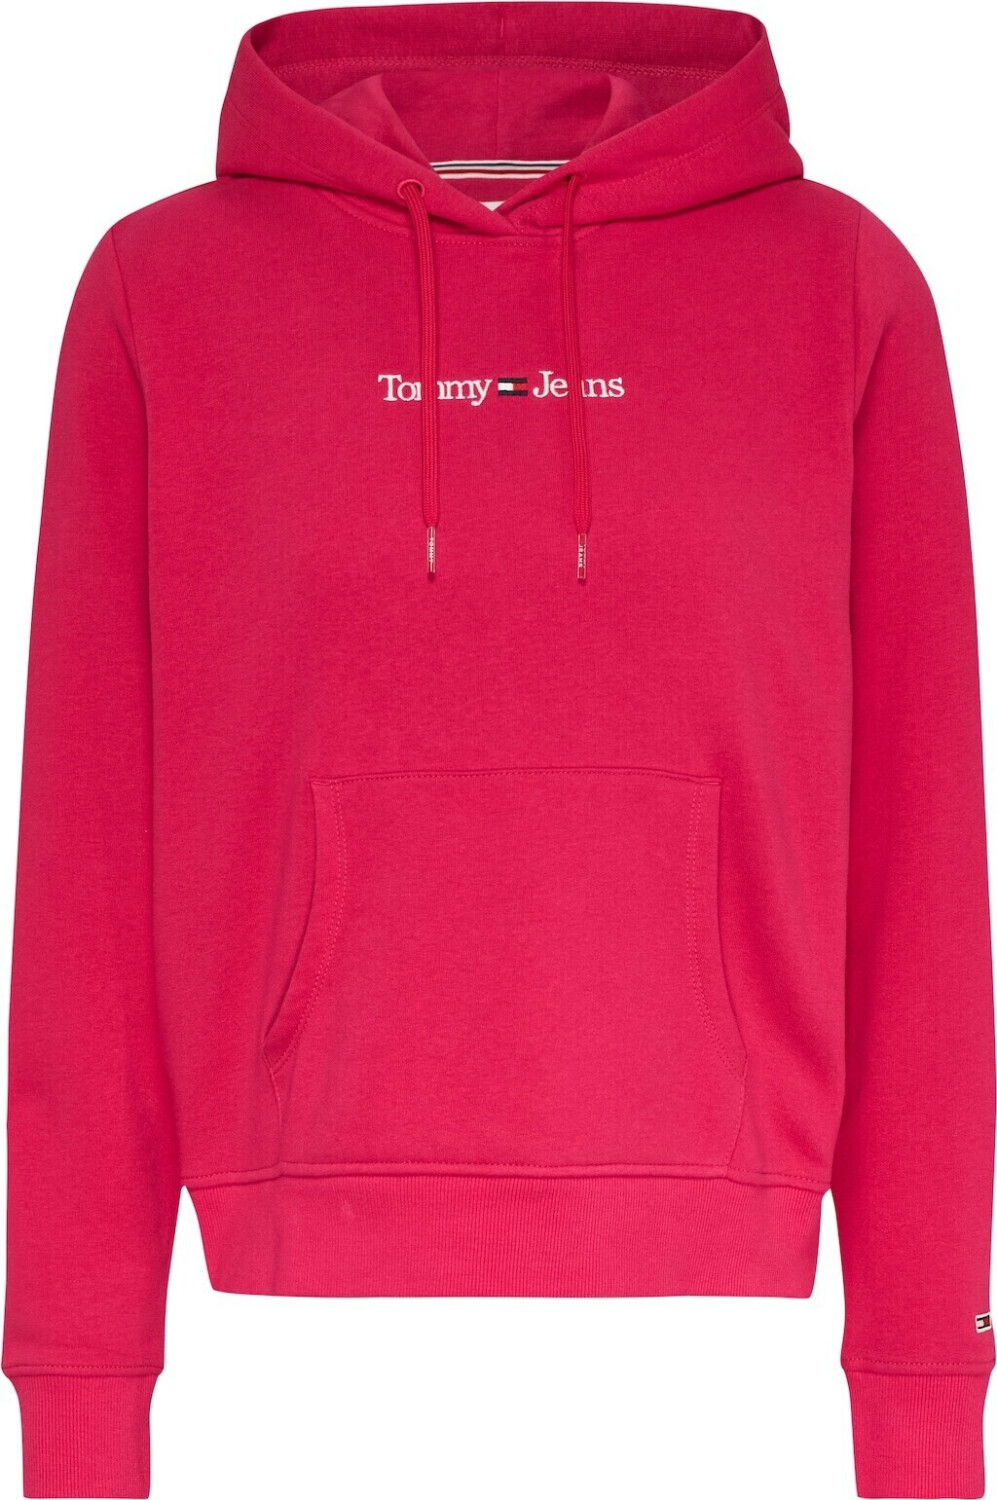 Tommy Hilfiger Sweatshirt Serif rose gypsy bei Preisvergleich 69,99 € (DW0DW15649) ab 